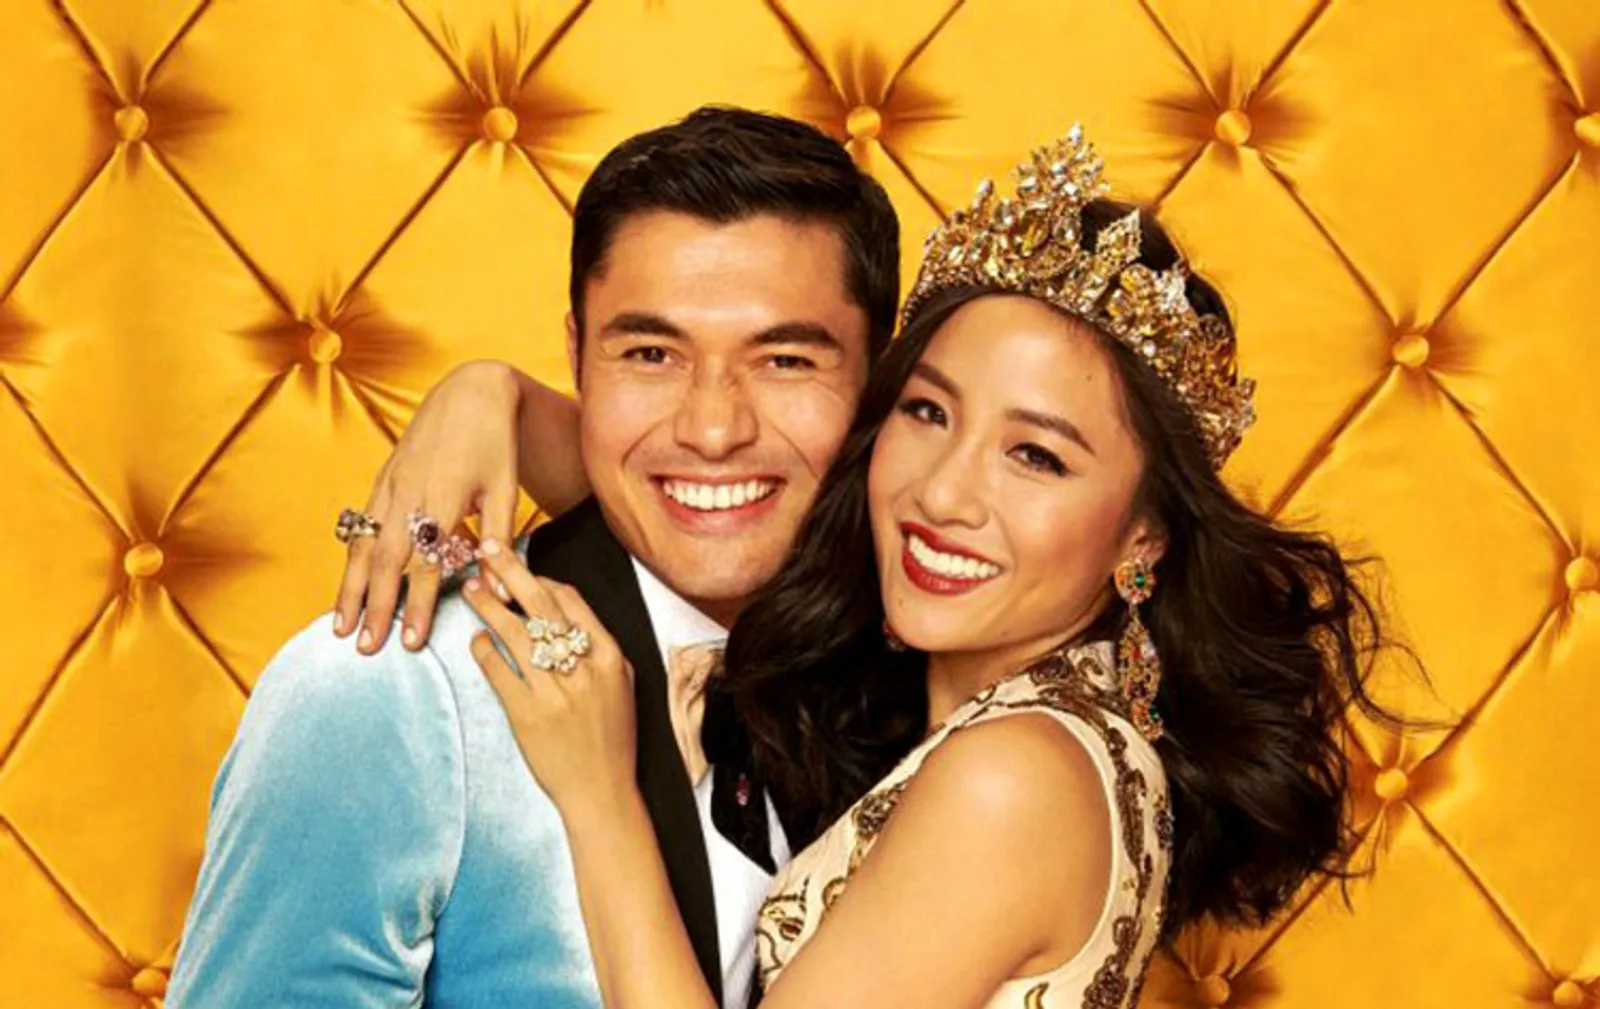 Review: Pelajaran Berharga tentang Cinta di Film ‘Crazy Rich Asians’